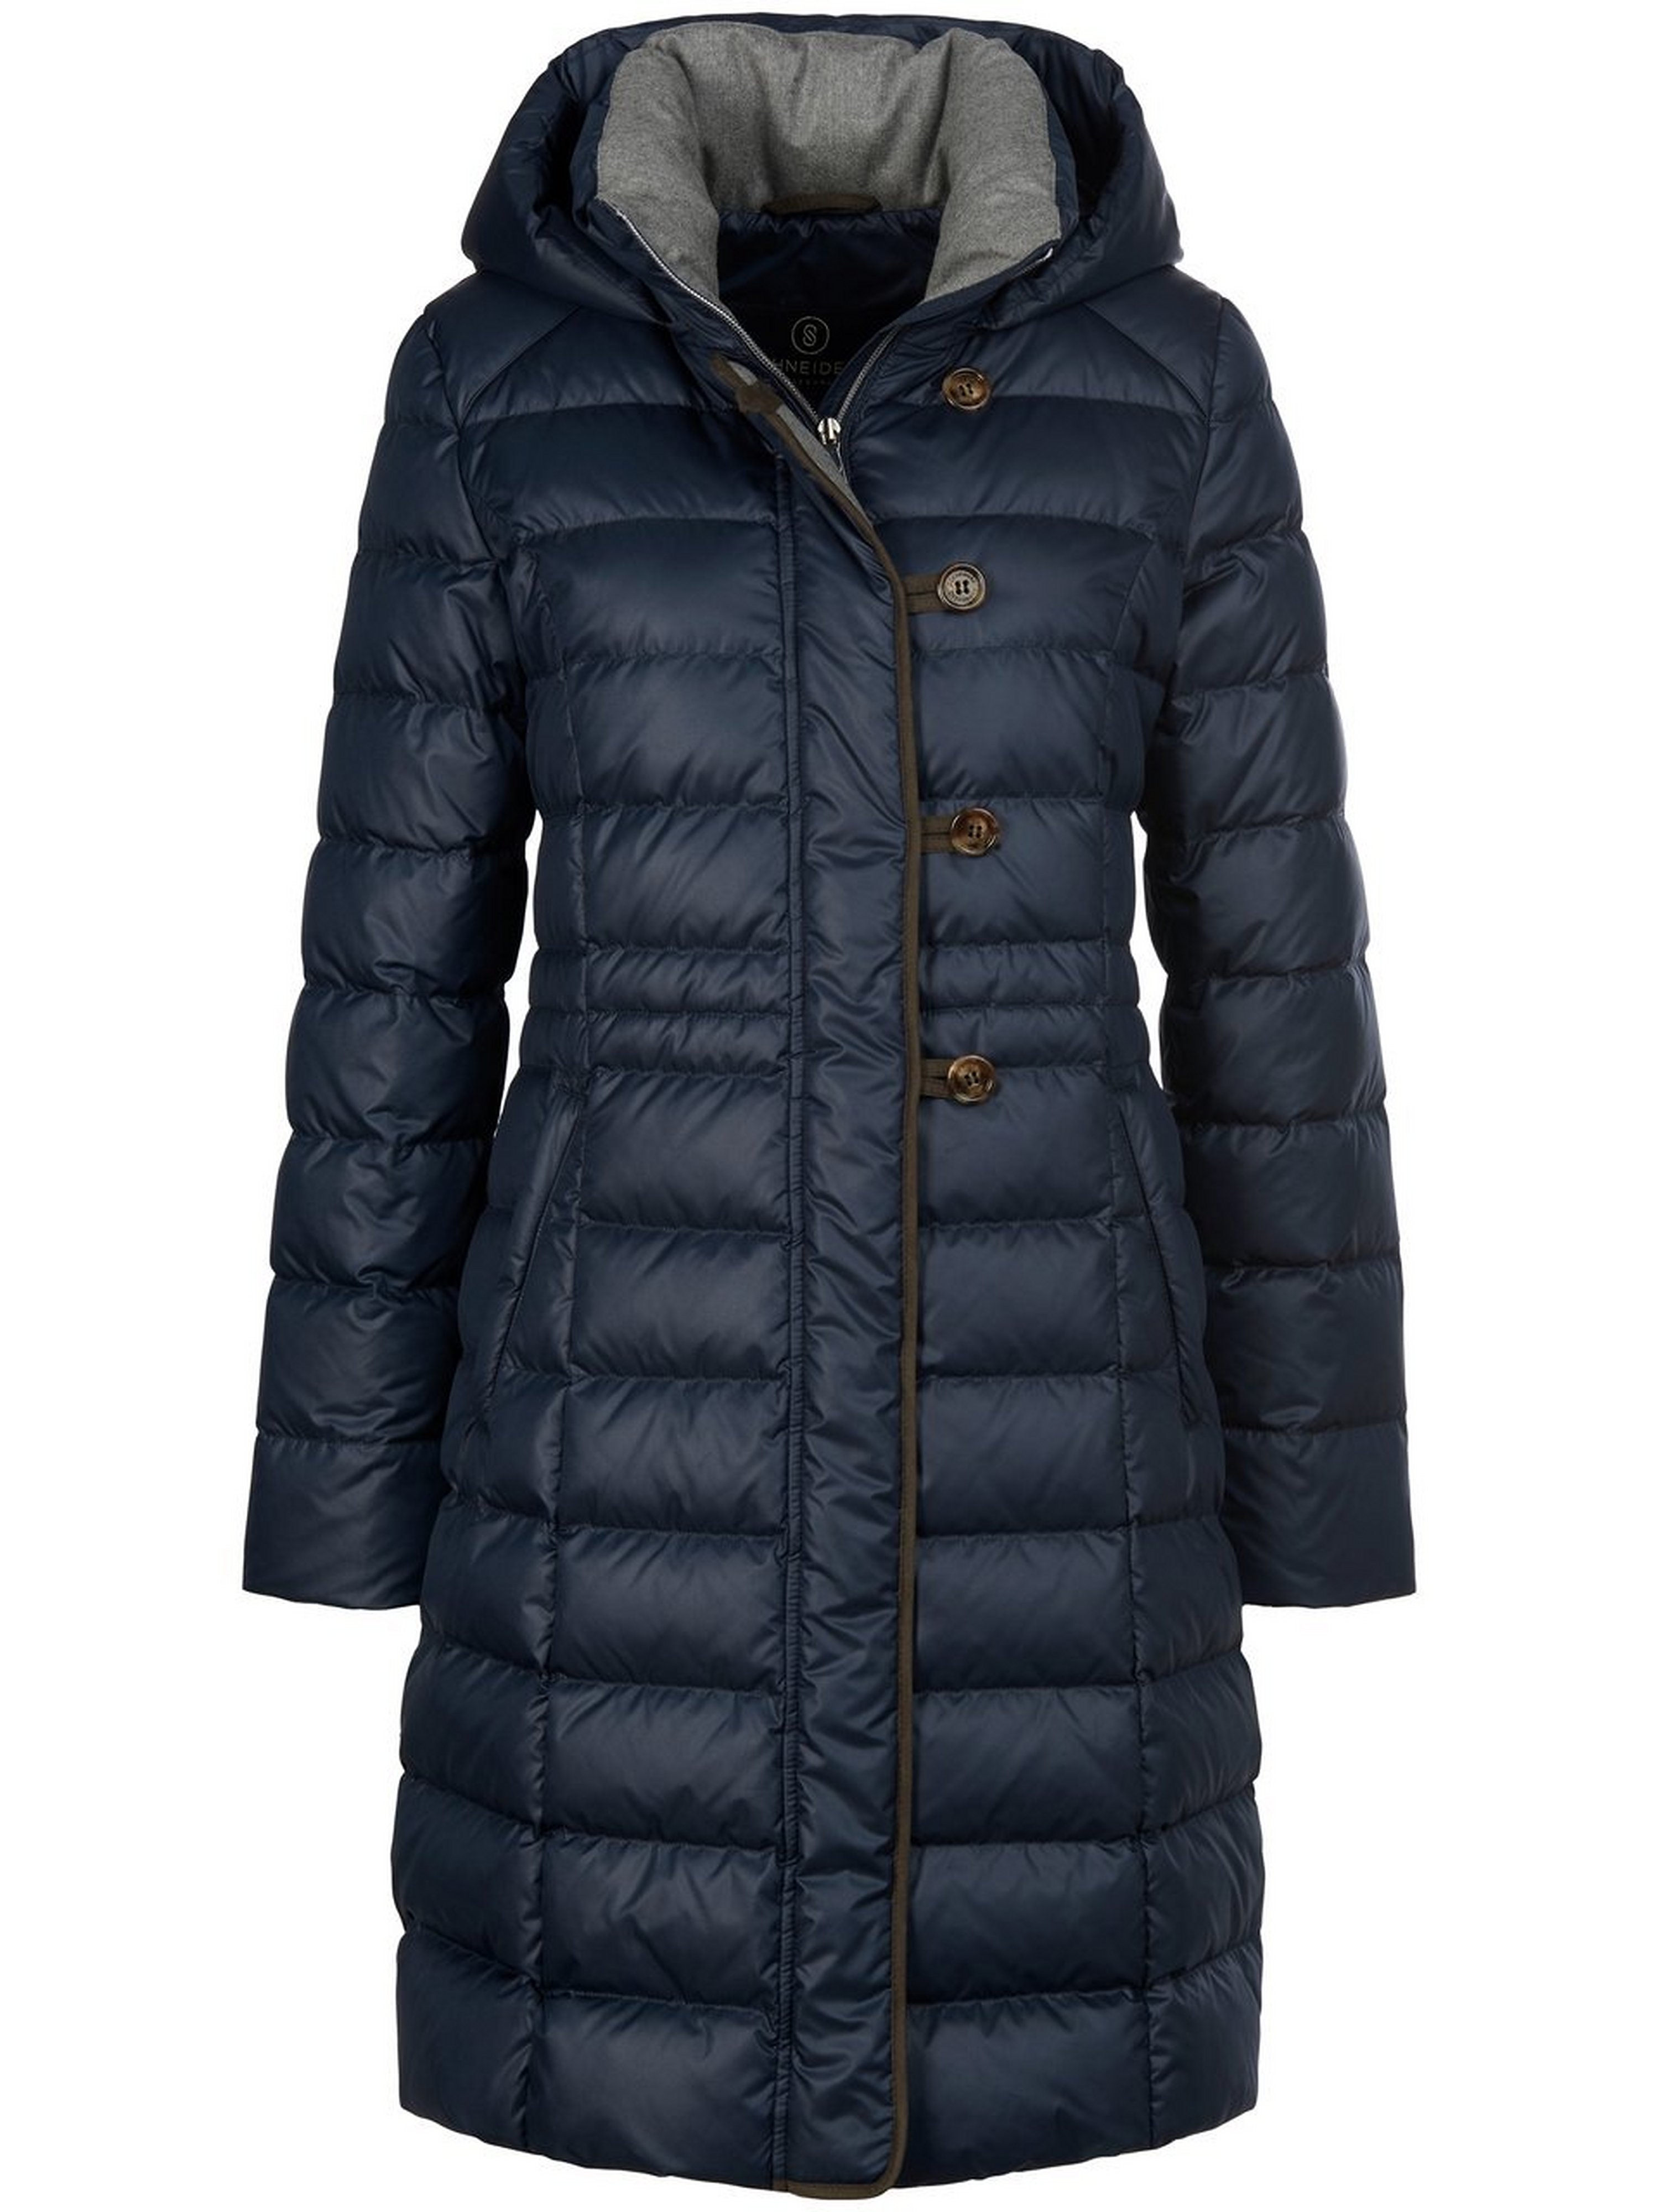 Le manteau doudoune avec capuche réglable  Schneiders Salzburg bleu taille 38